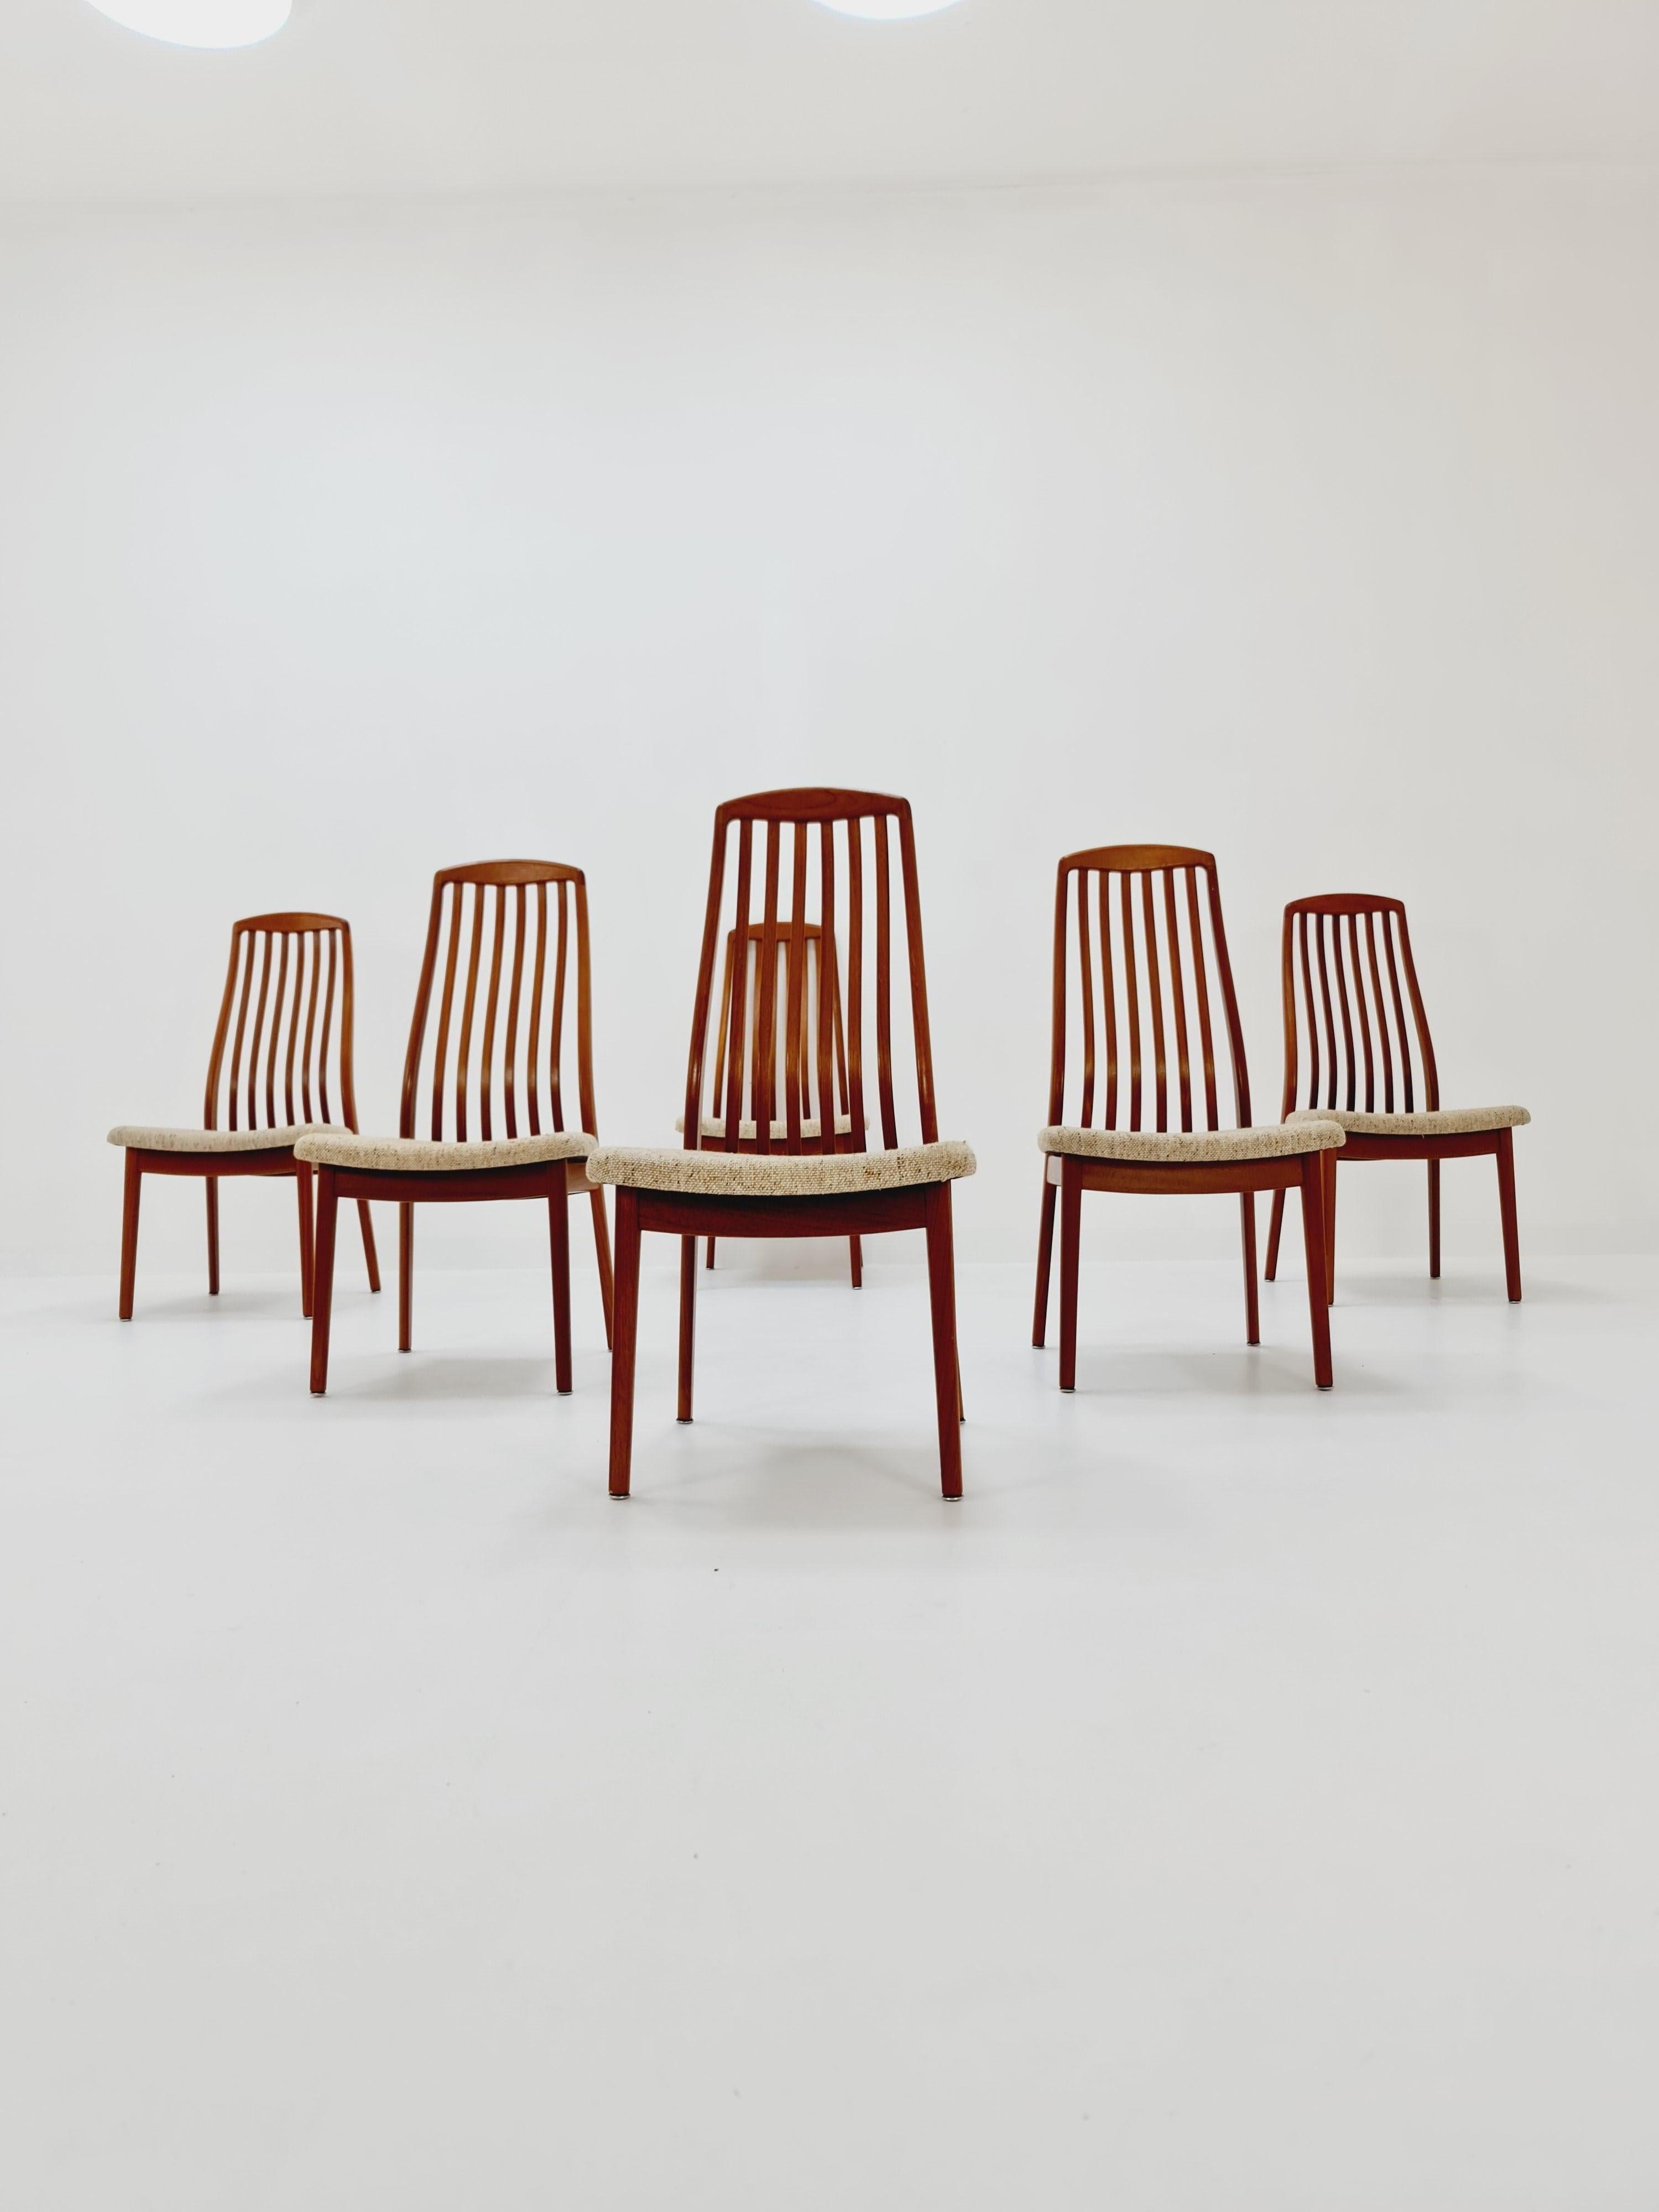 Dänische Esszimmerstühle aus Teakholz von Schou Andersen, 1960er Jahre, 6er-Set, Set


Die Stuhlrahmen sind aus massivem Teakholz gefertigt und befinden sich in einem guten Zustand.

Hergestellt in Dänemark in den 60er Jahren

Abmessungen:
Breite: